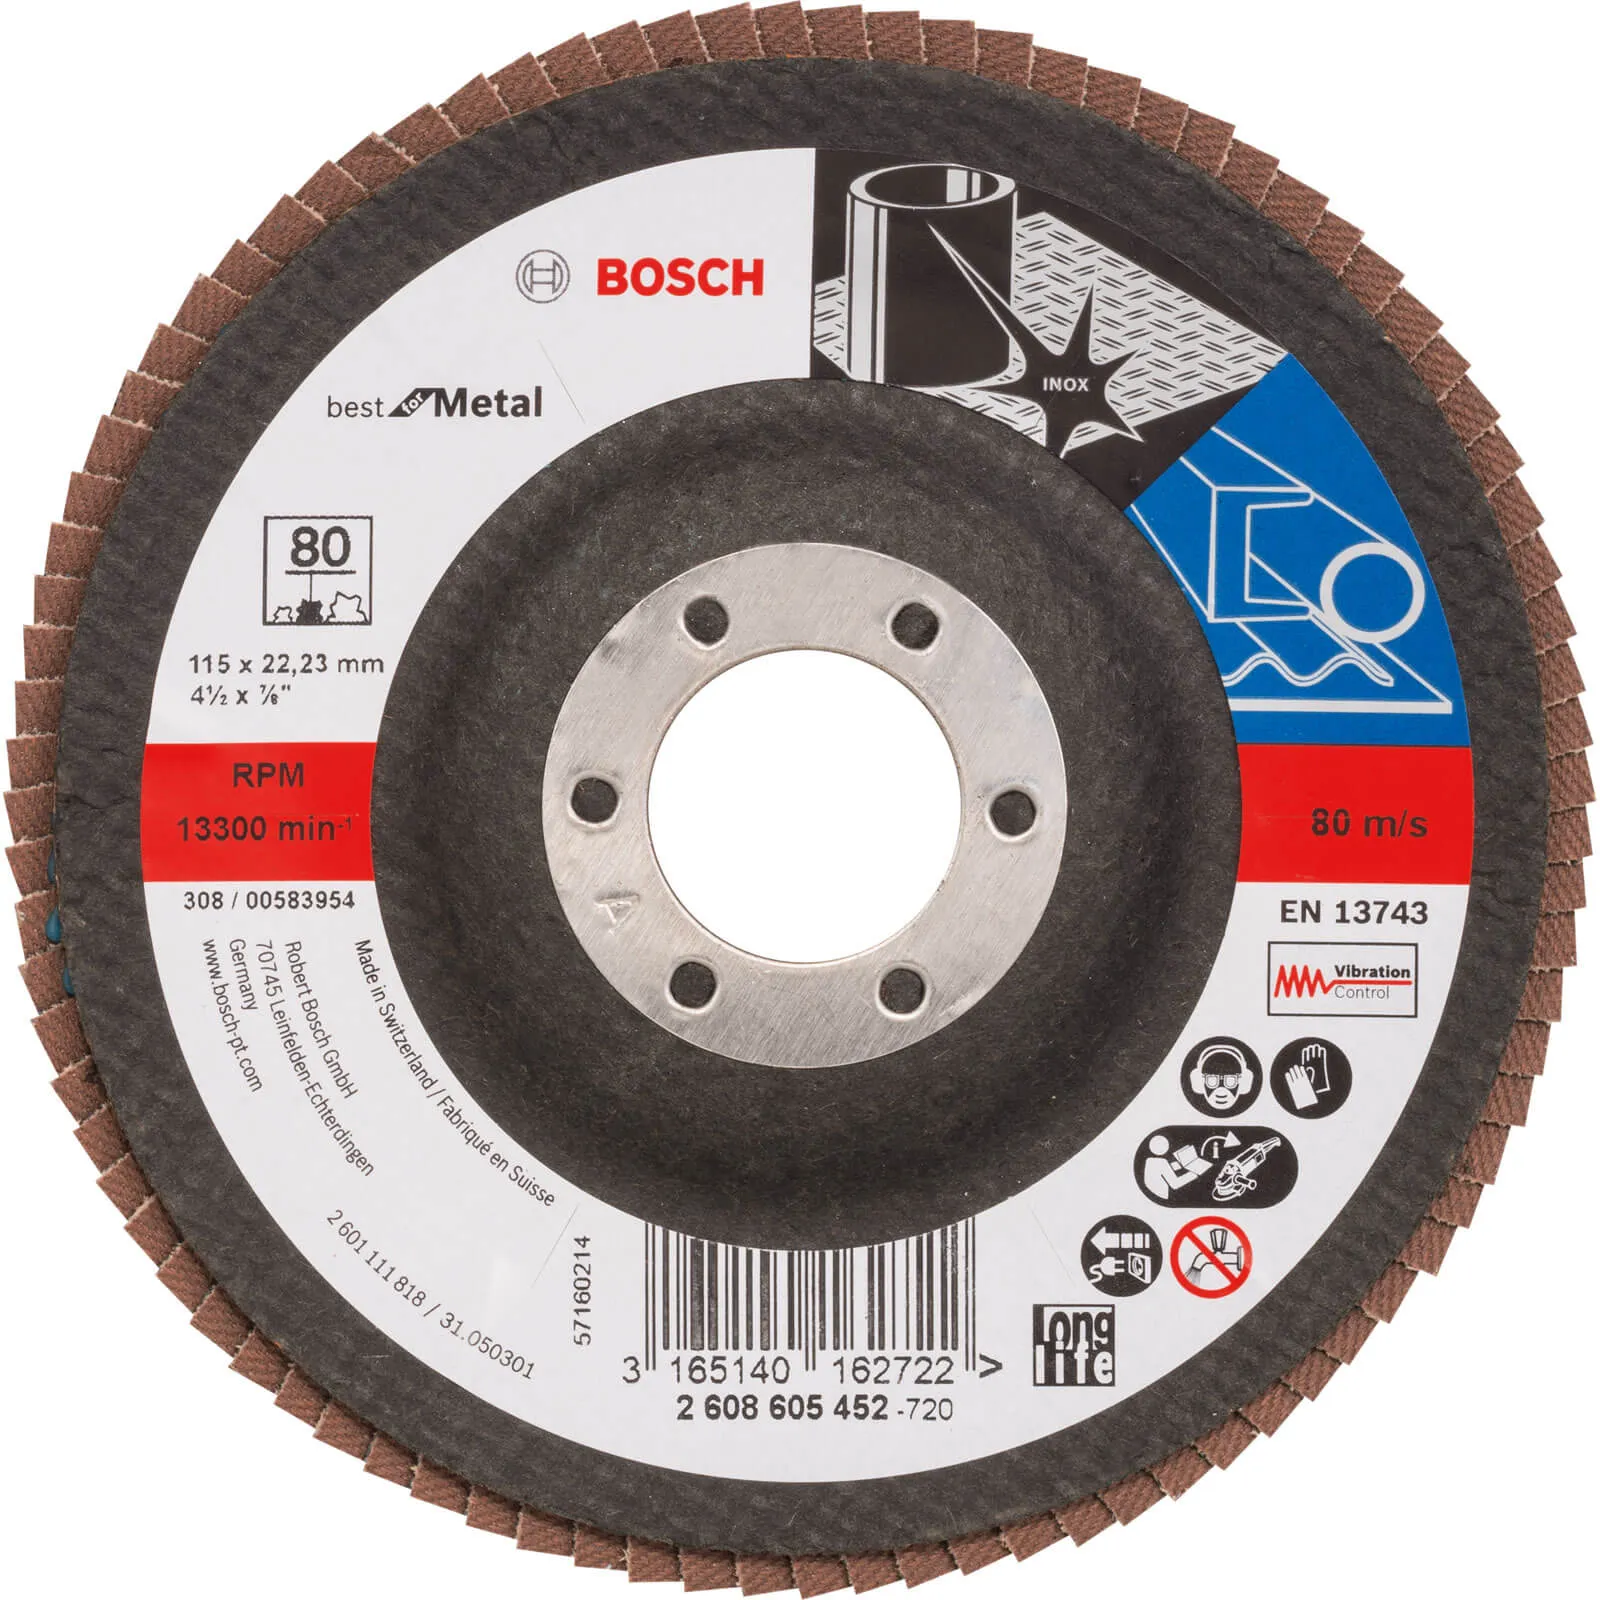 Bosch Zirconium Abrasive Flap Disc - 115mm, 80g